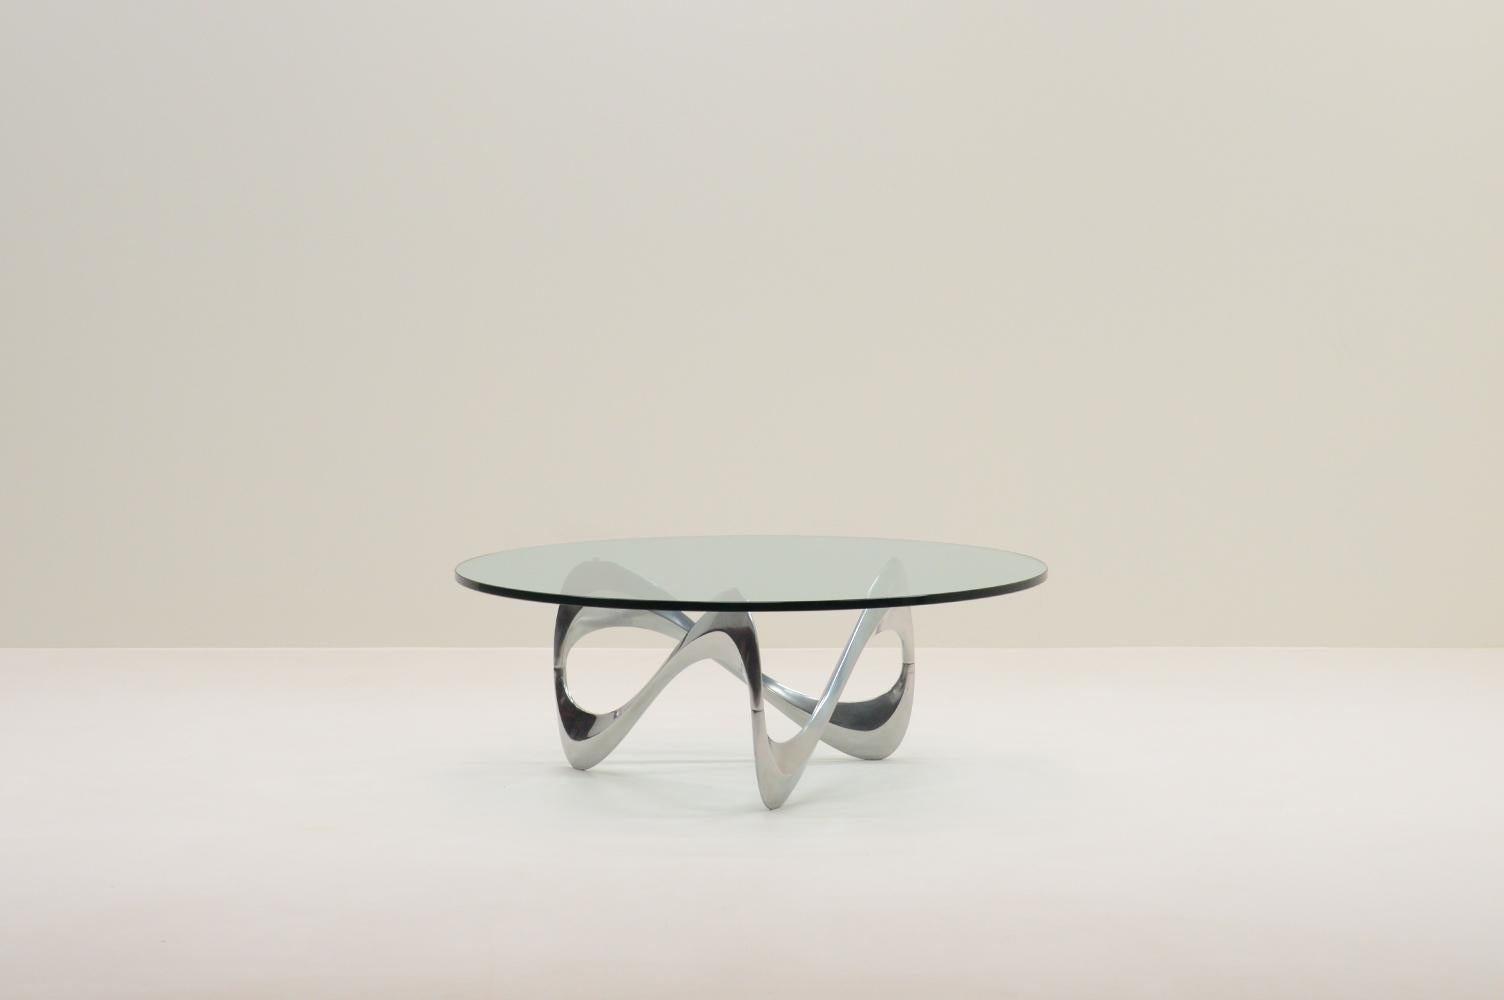 Schlange Couchtisch von Knut Hesterberg für Ronald Schmitt, 1960er Jahre Deutschland. Die skulpturale Basis des Tisches besteht aus poliertem Aluminium mit einer dicken Glasplatte. Knut Hesterberg war für seinen minimalistischen, funktionalen